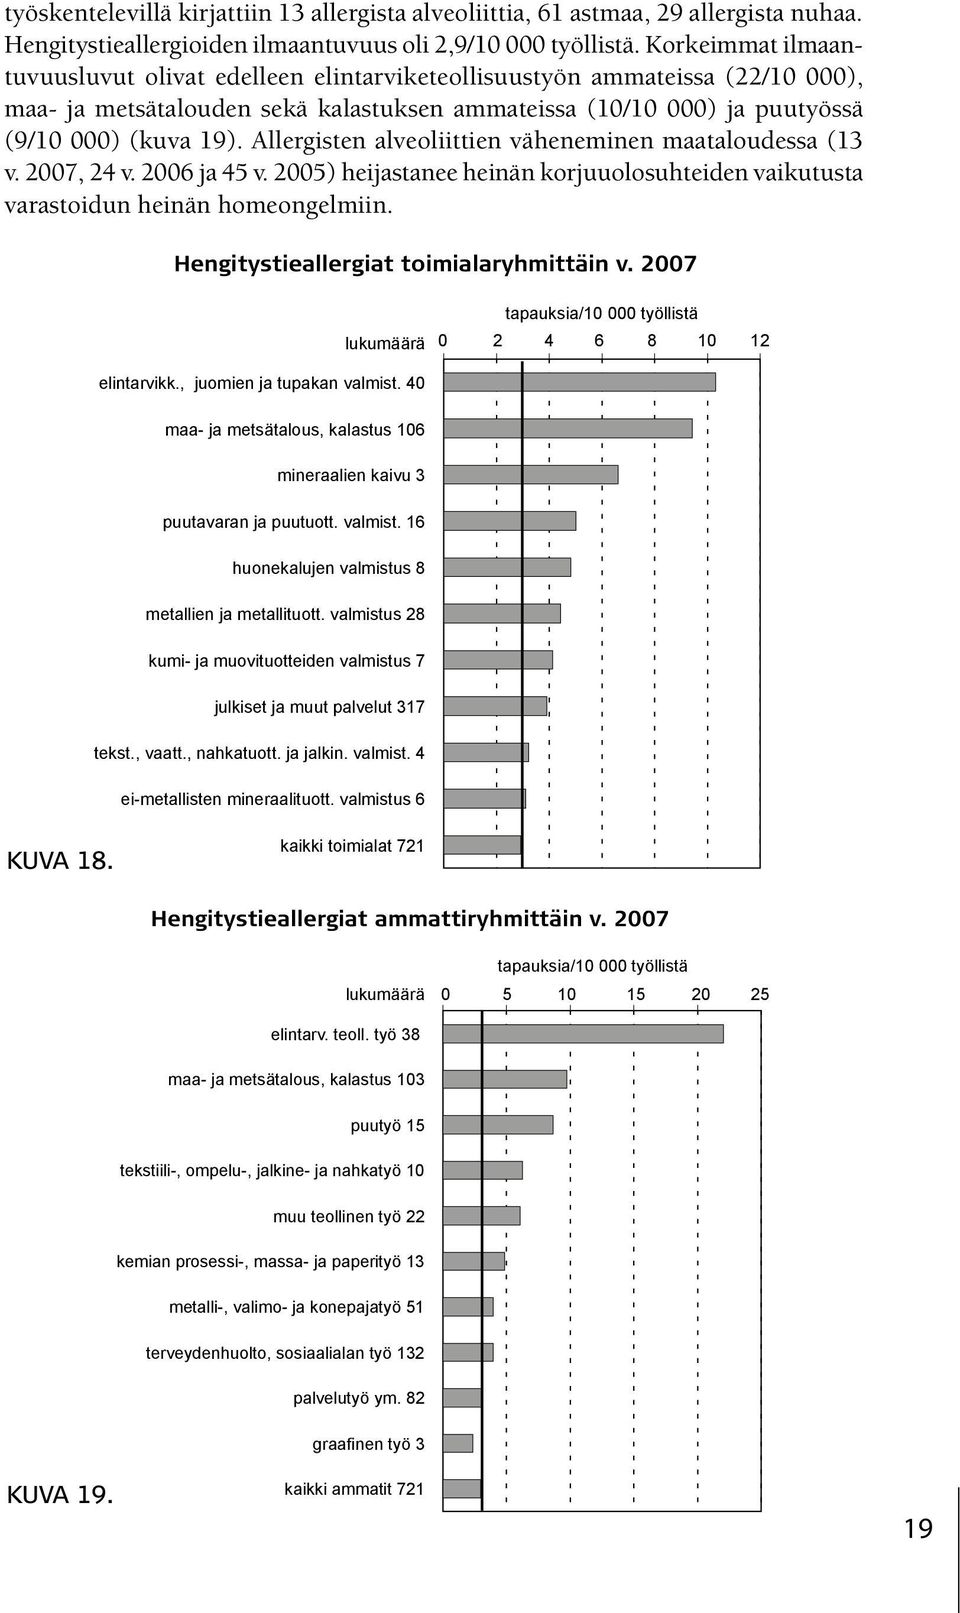 Allergisten alveoliittien väheneminen maataloudessa (13 v. 2007, 24 v. 2006 ja 45 v. 2005) heijastanee heinän korjuuolosuhteiden vaikutusta varastoidun heinän homeongelmiin.